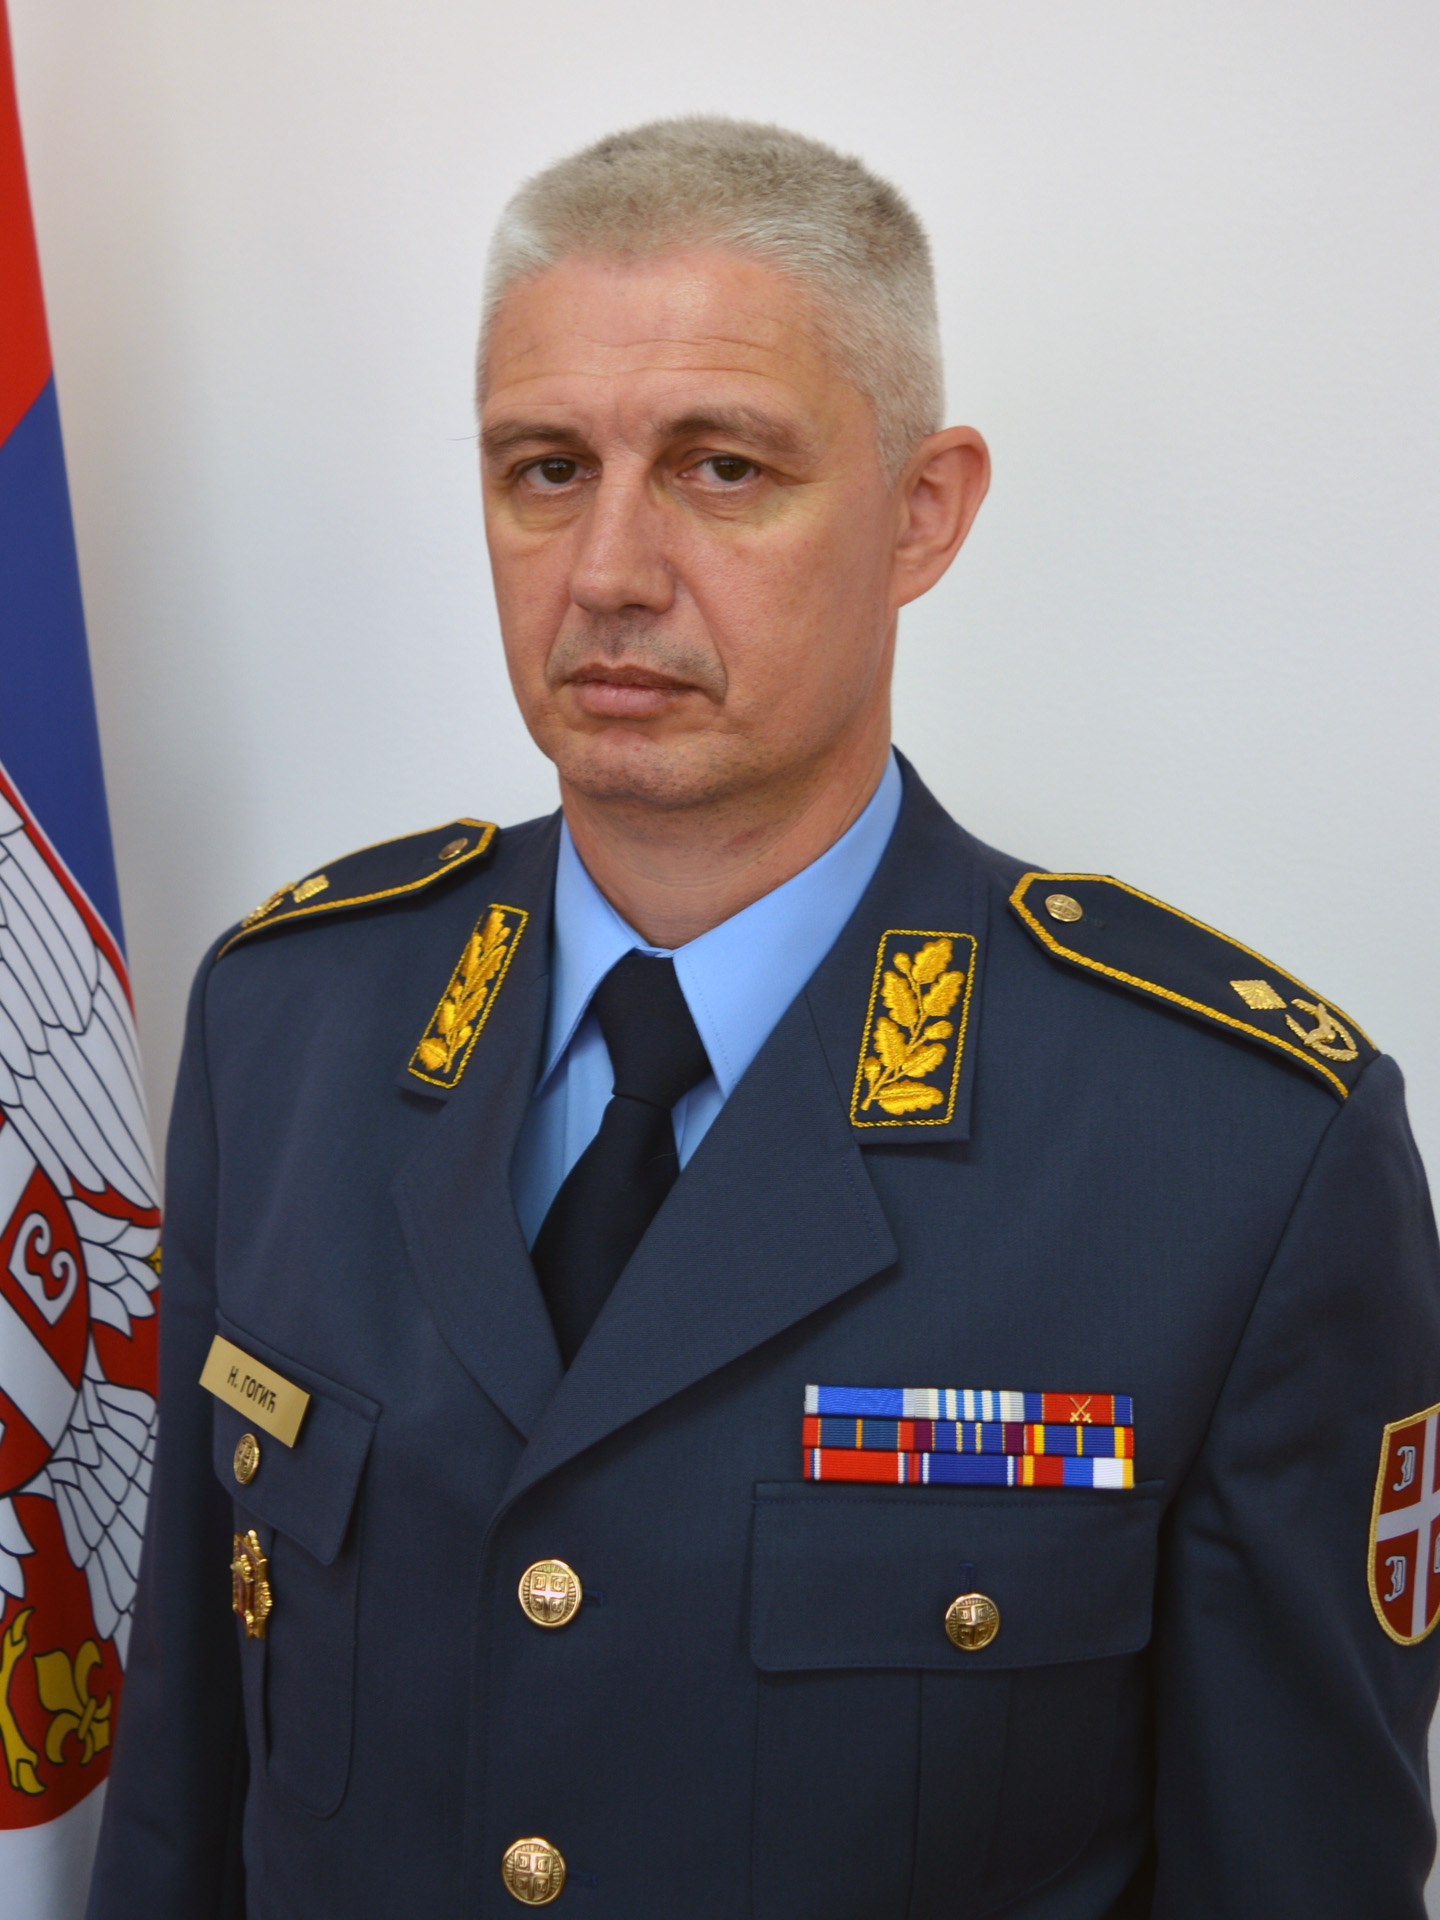 Colonel Novica Gogić